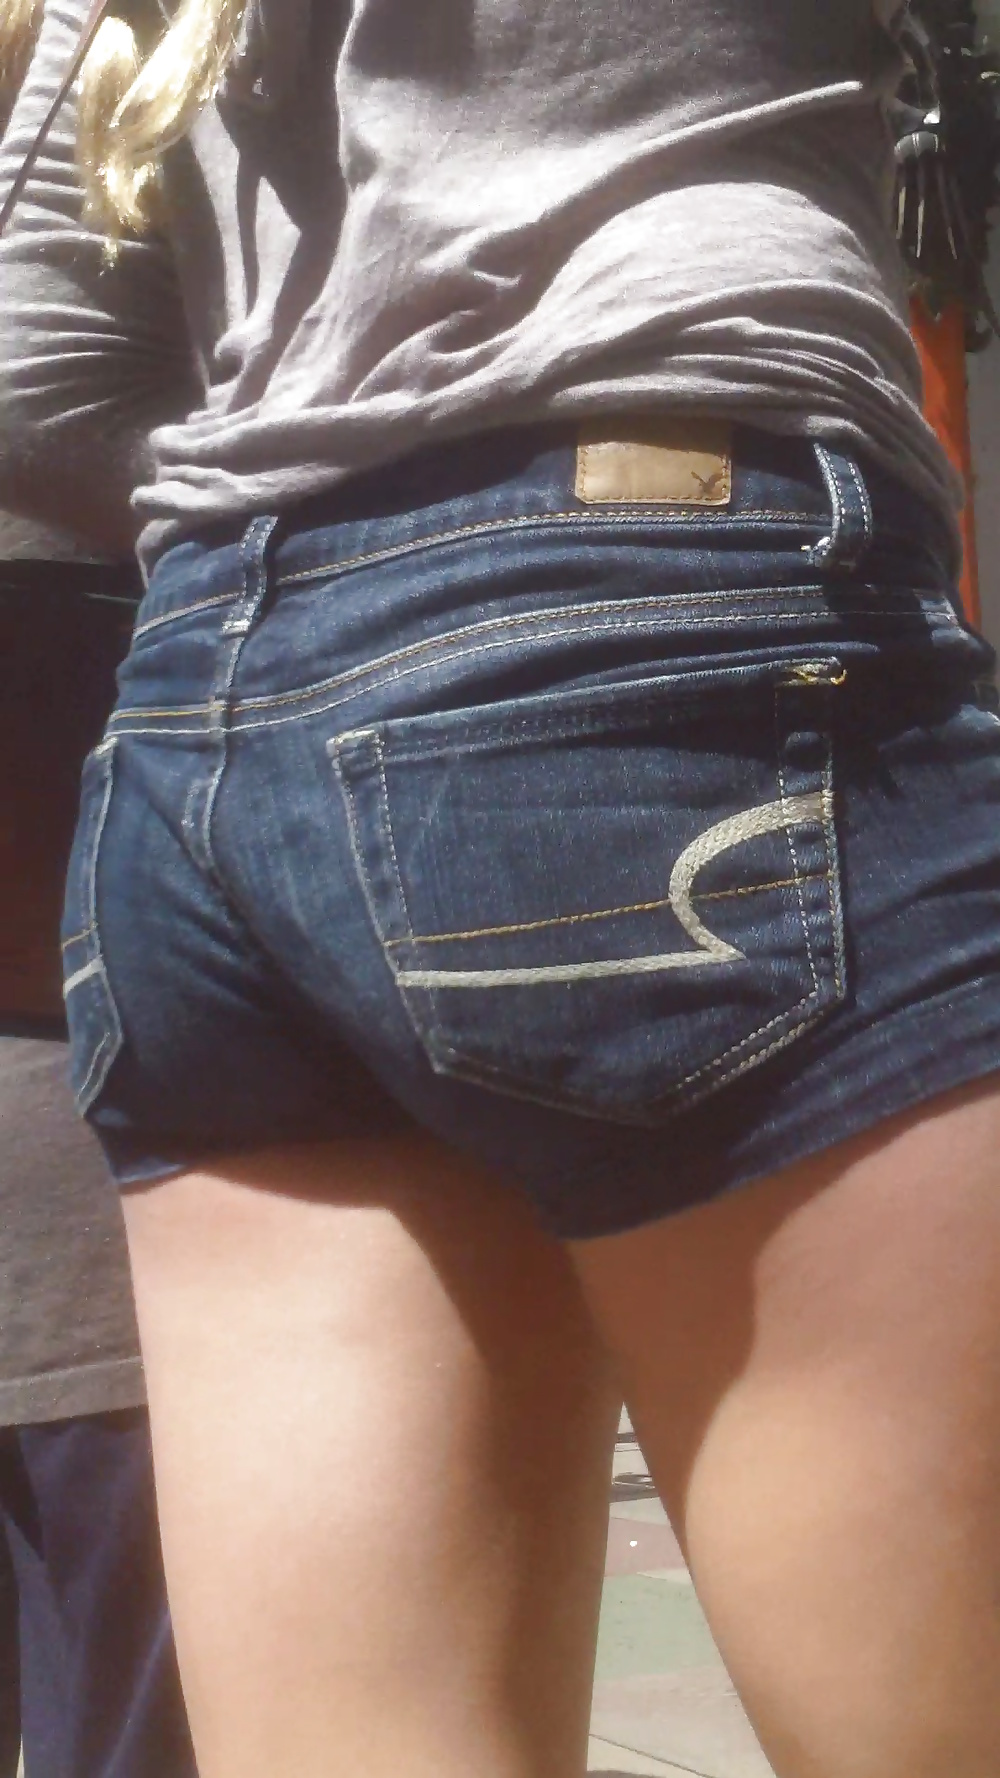 Popular teen girls ass & butt in jeans part 3 #25400576